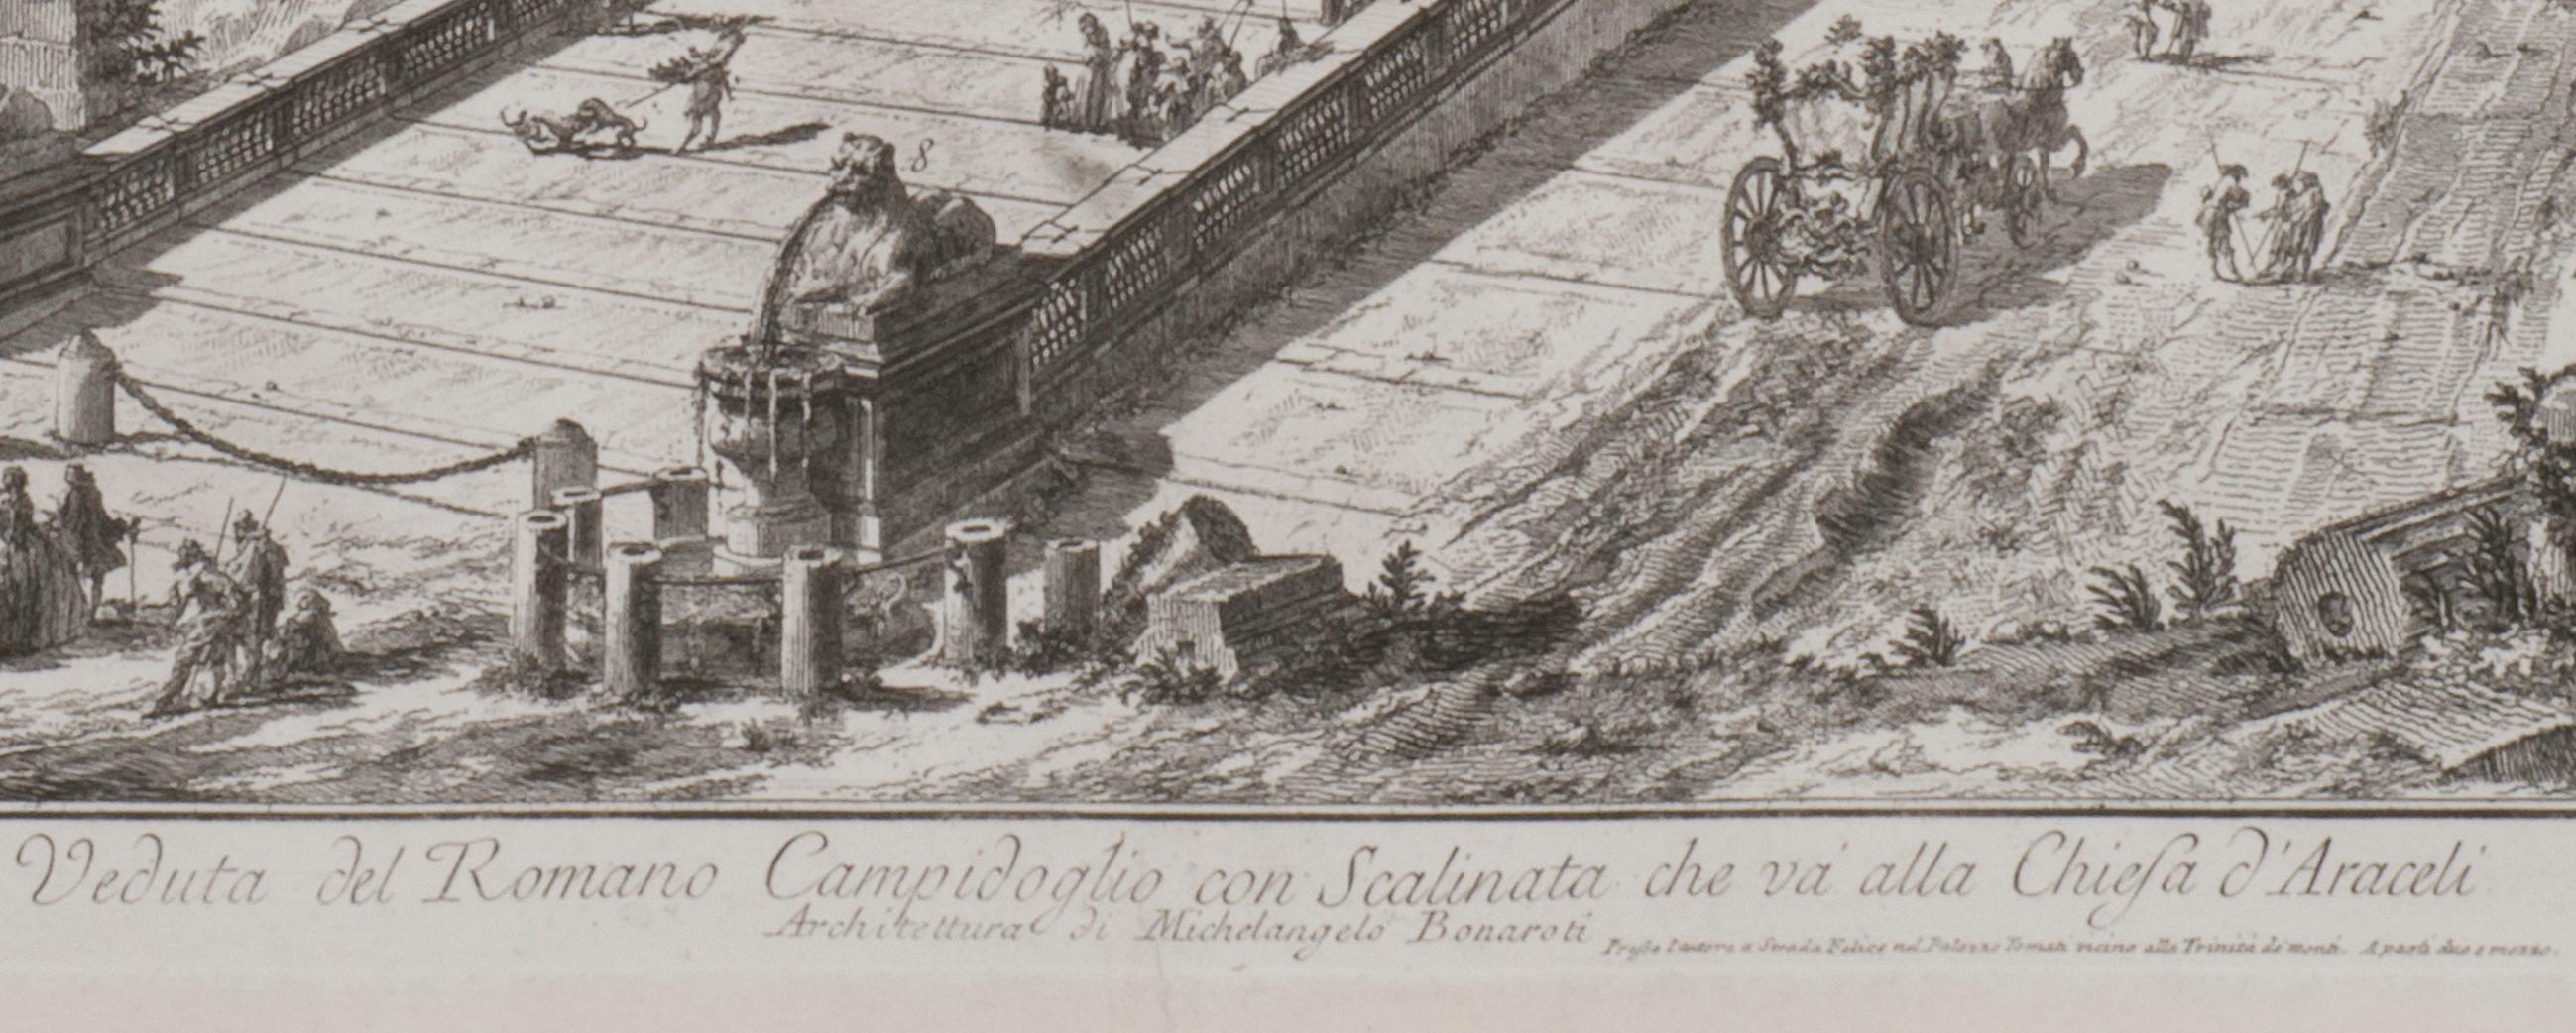 Veduta del Romano Camipidpglio con scalinata che va alla chisea d'A.I.C. (The C en vente 1